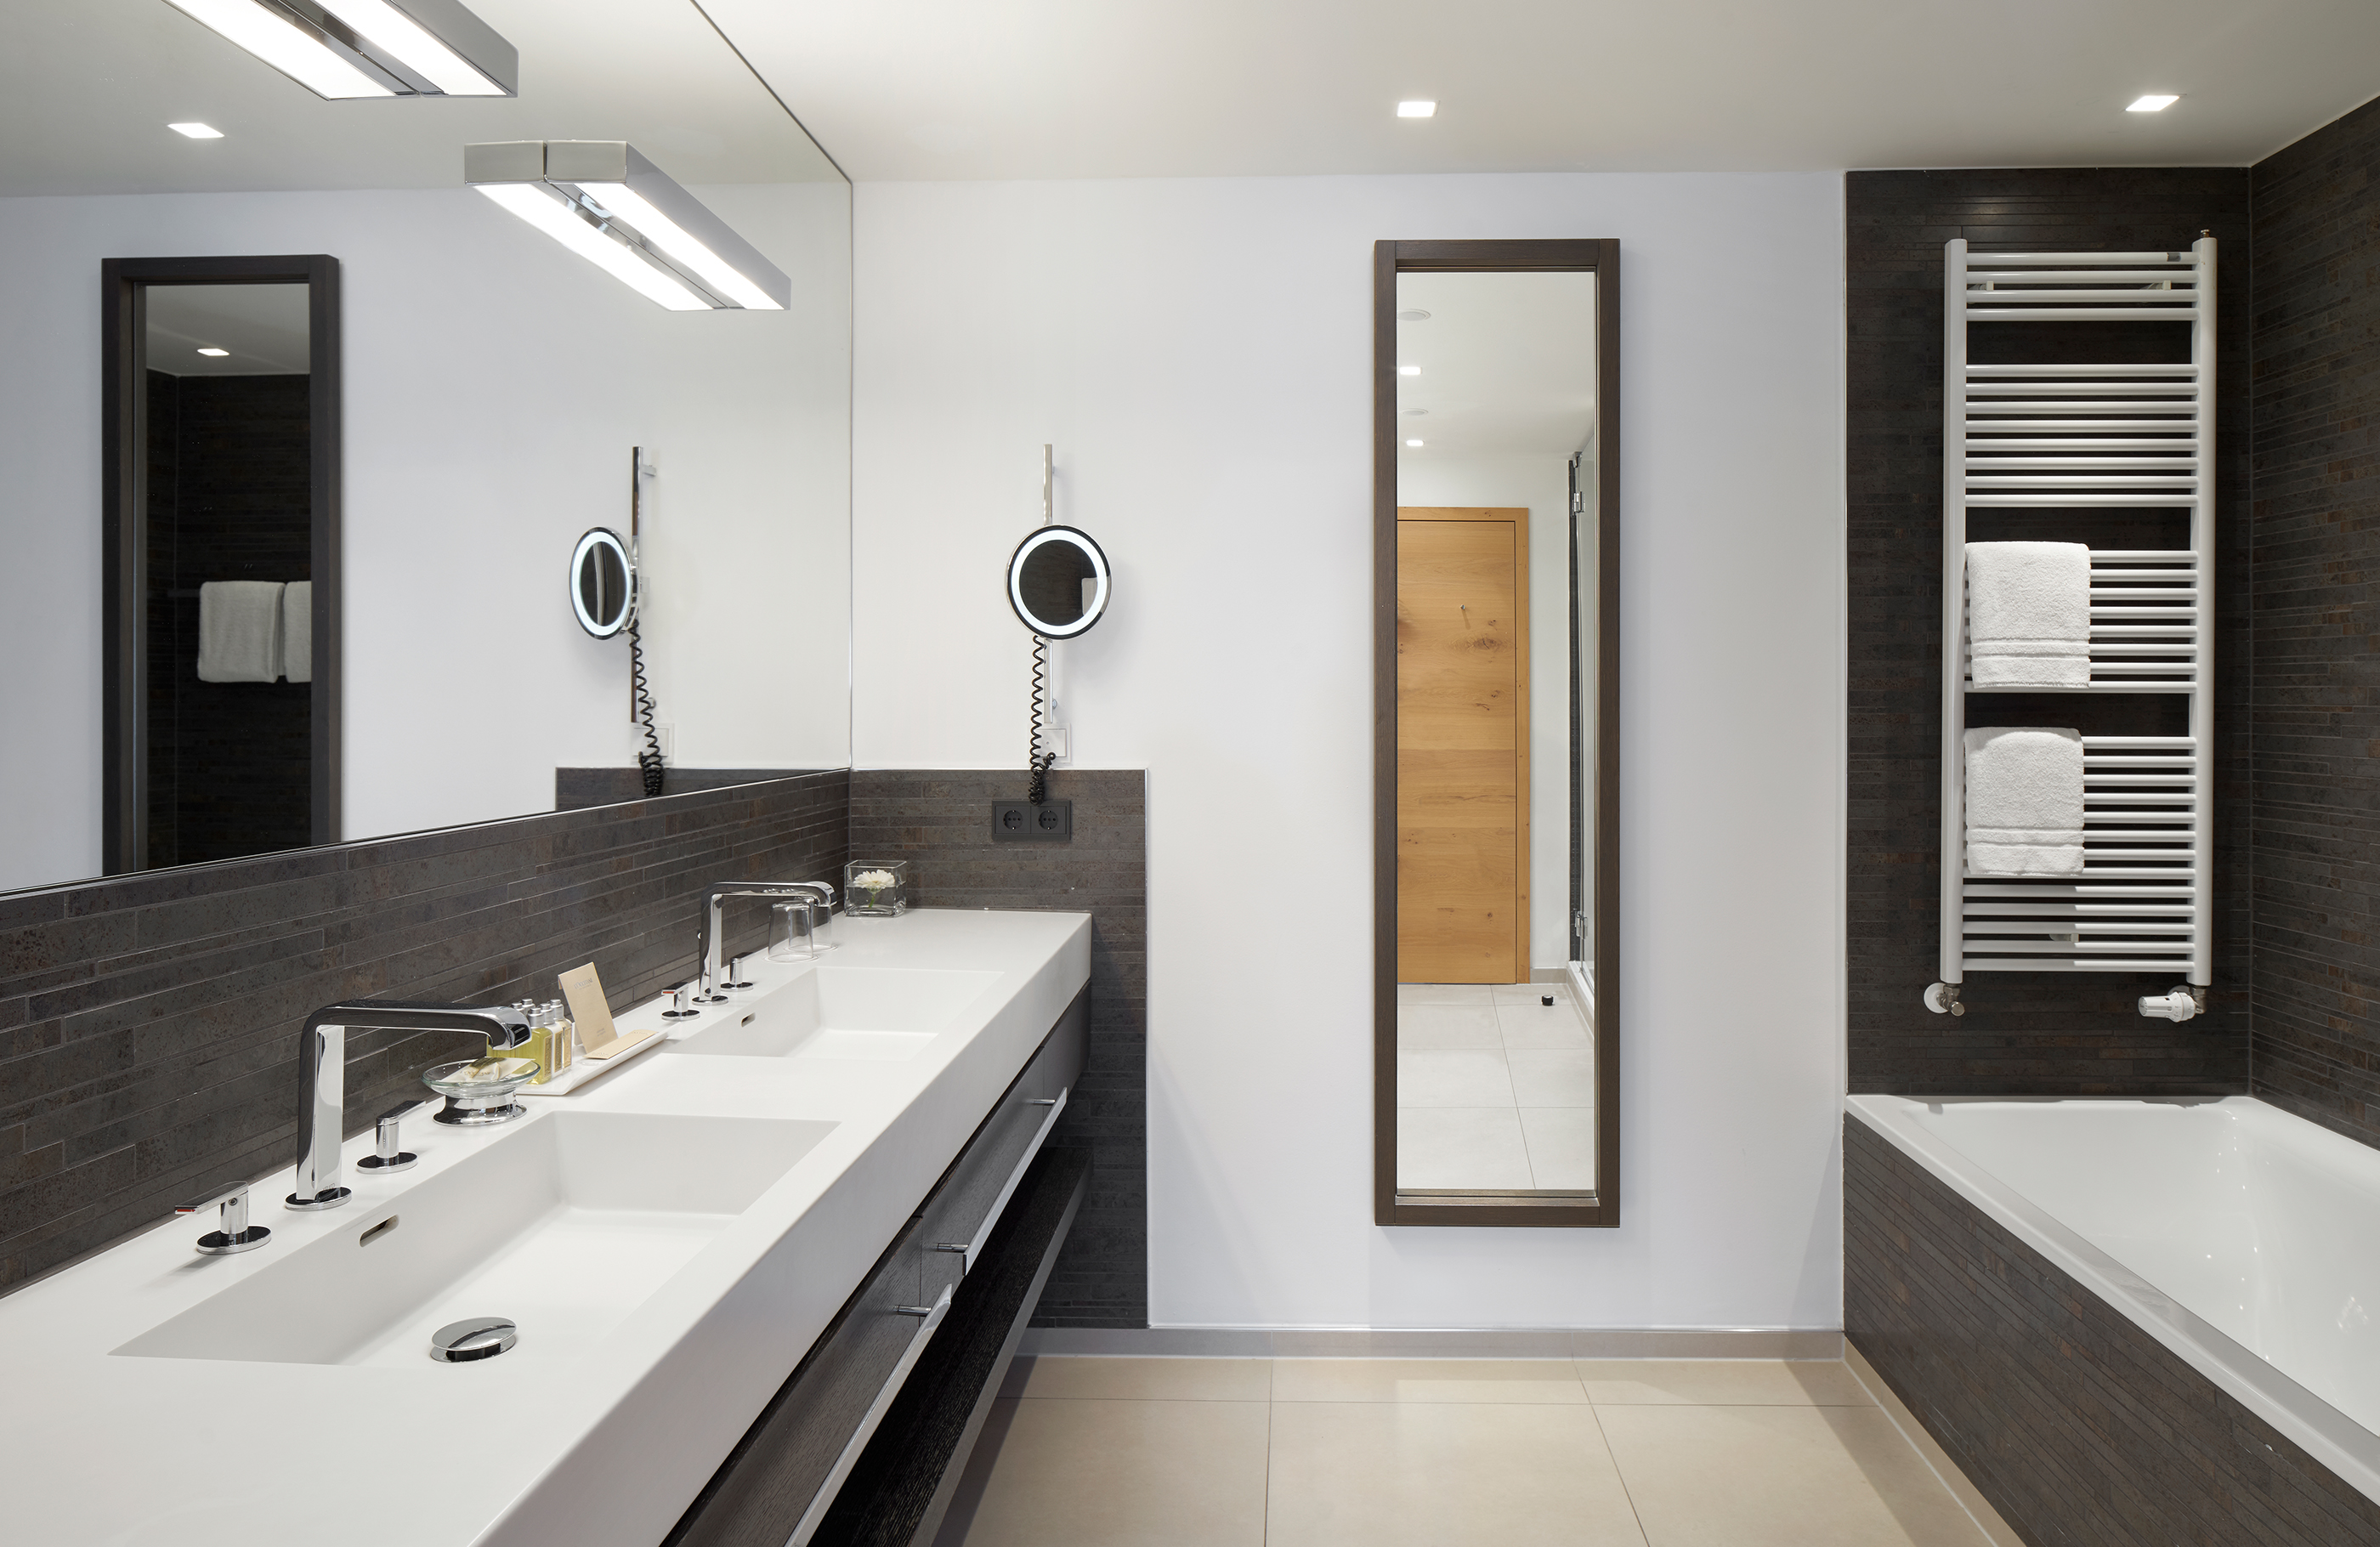 Aufnahme im Badezimmer mit einem doppelten Waschbecken, Badewanne, großen Spiegeln und dunklen modernen Fliesen